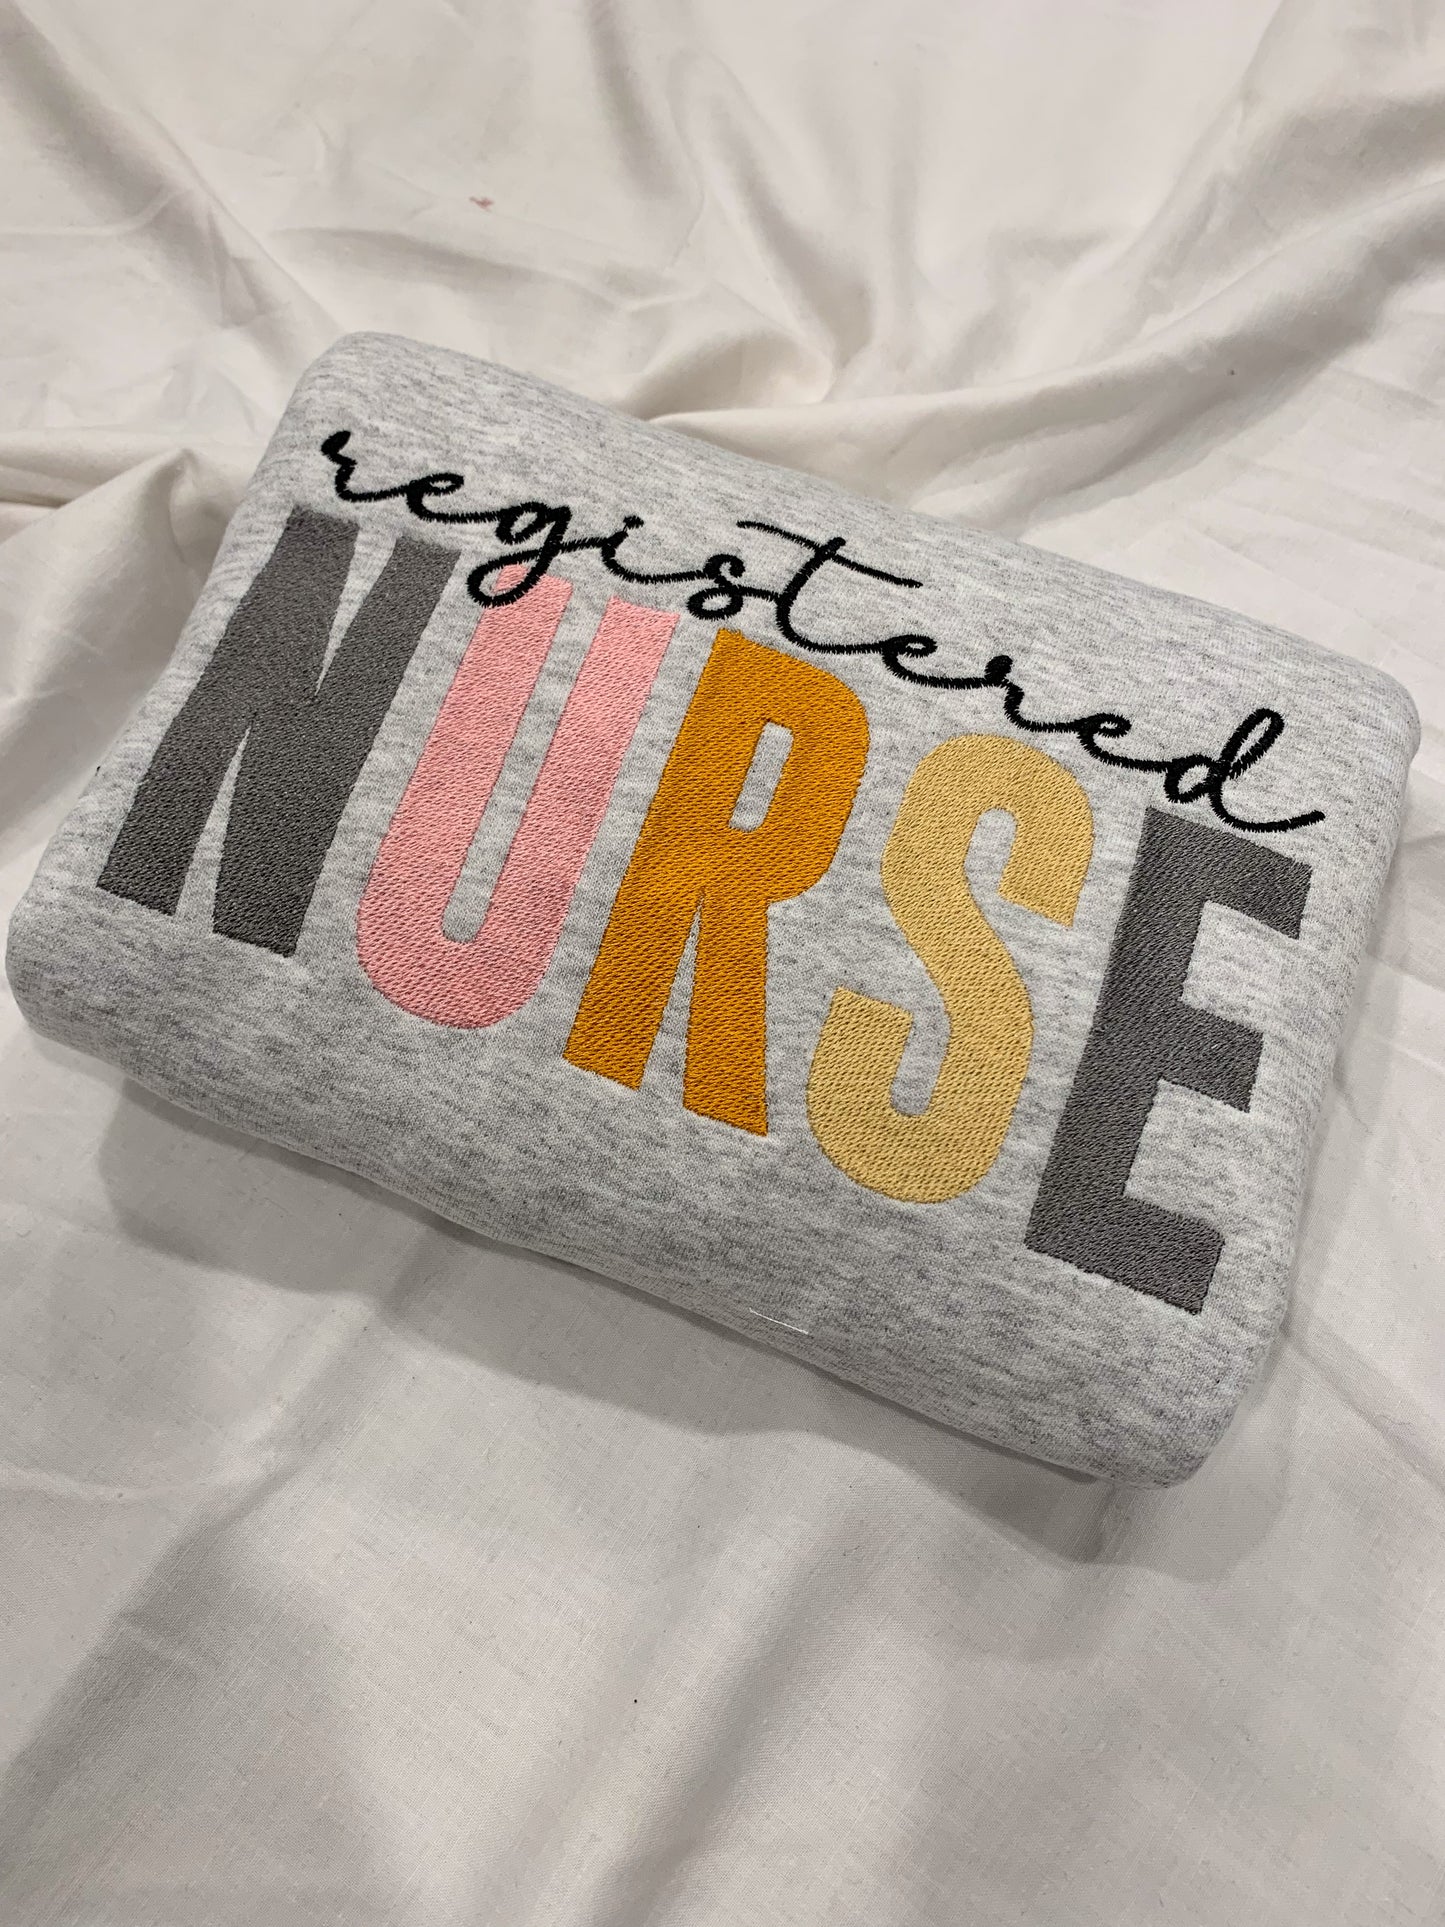 Registered Nurse Crew